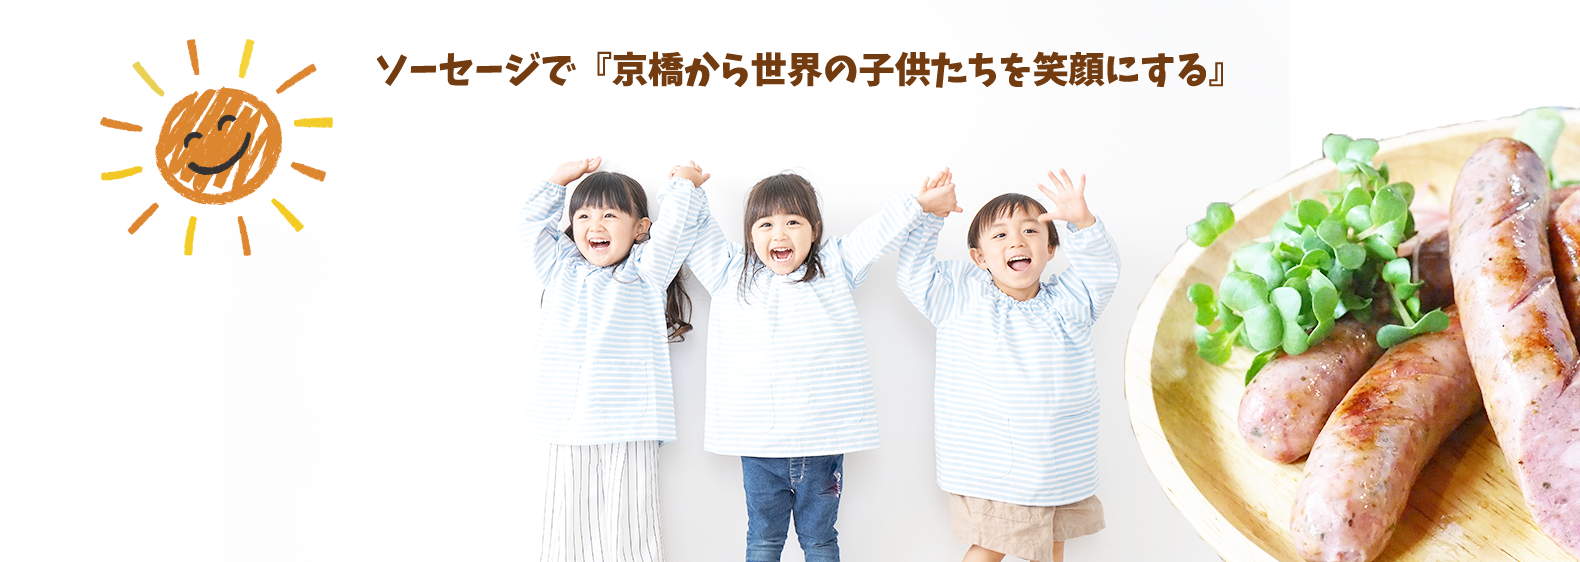 ソーセージで「京橋から世界の子供たちを笑顔にする」